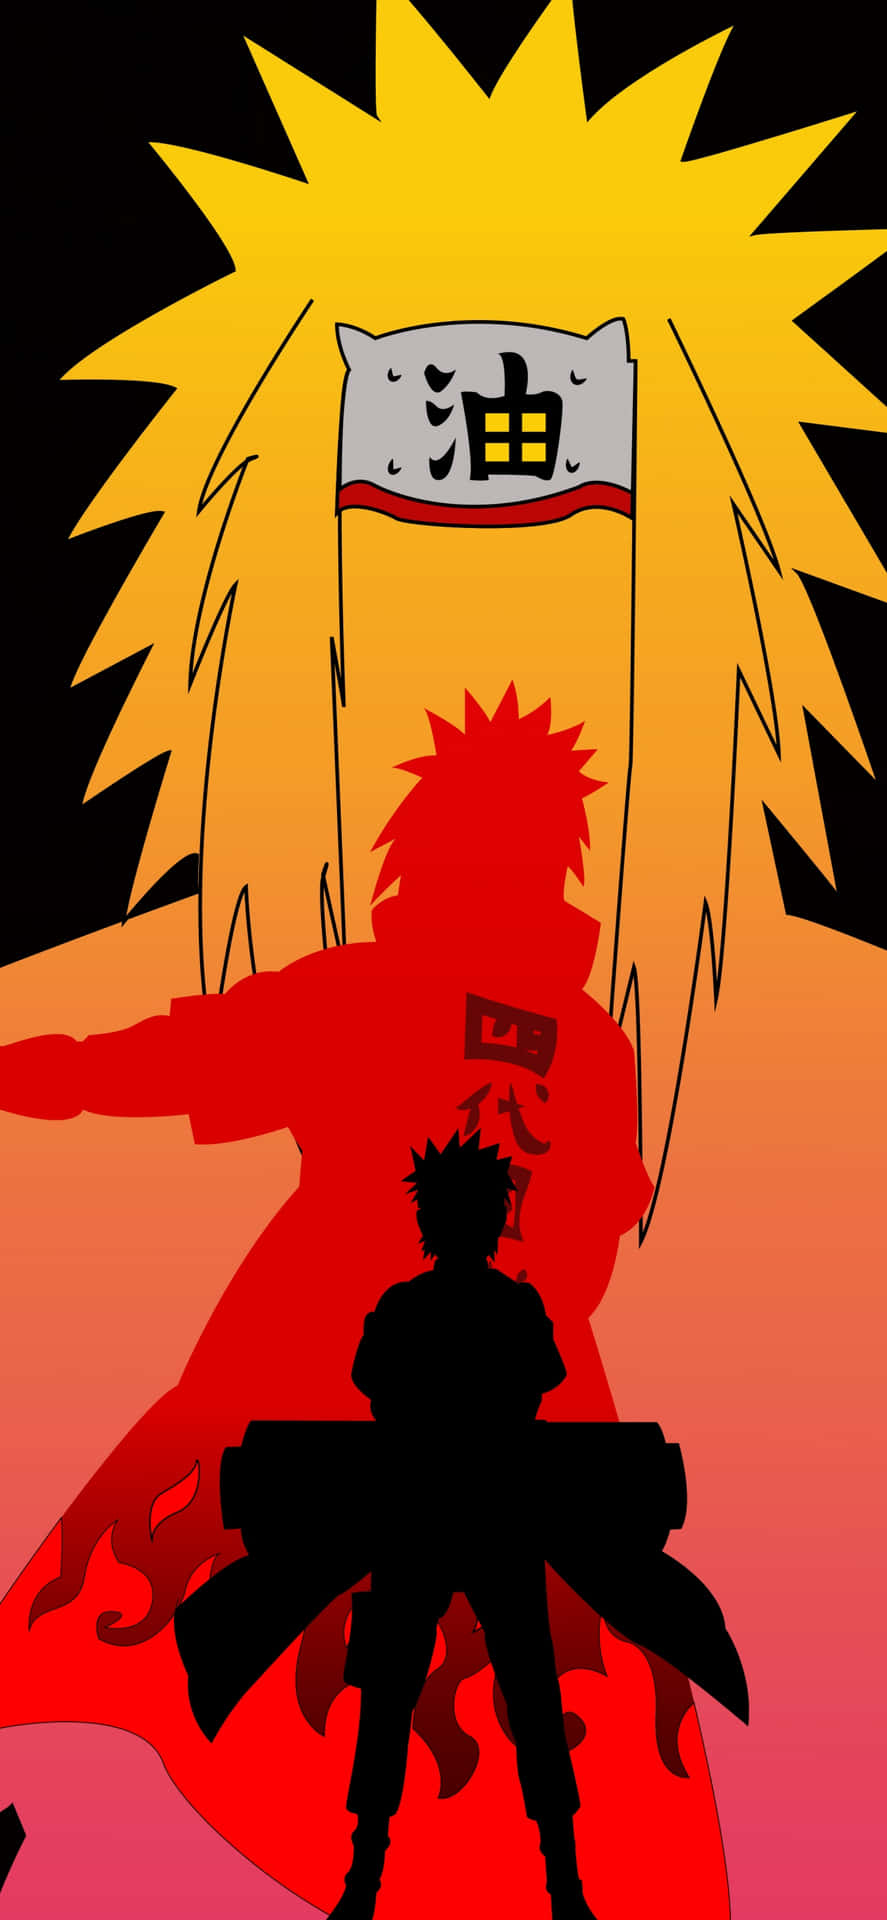 Umasilhueta De Um Personagem Do Naruto Papel de Parede